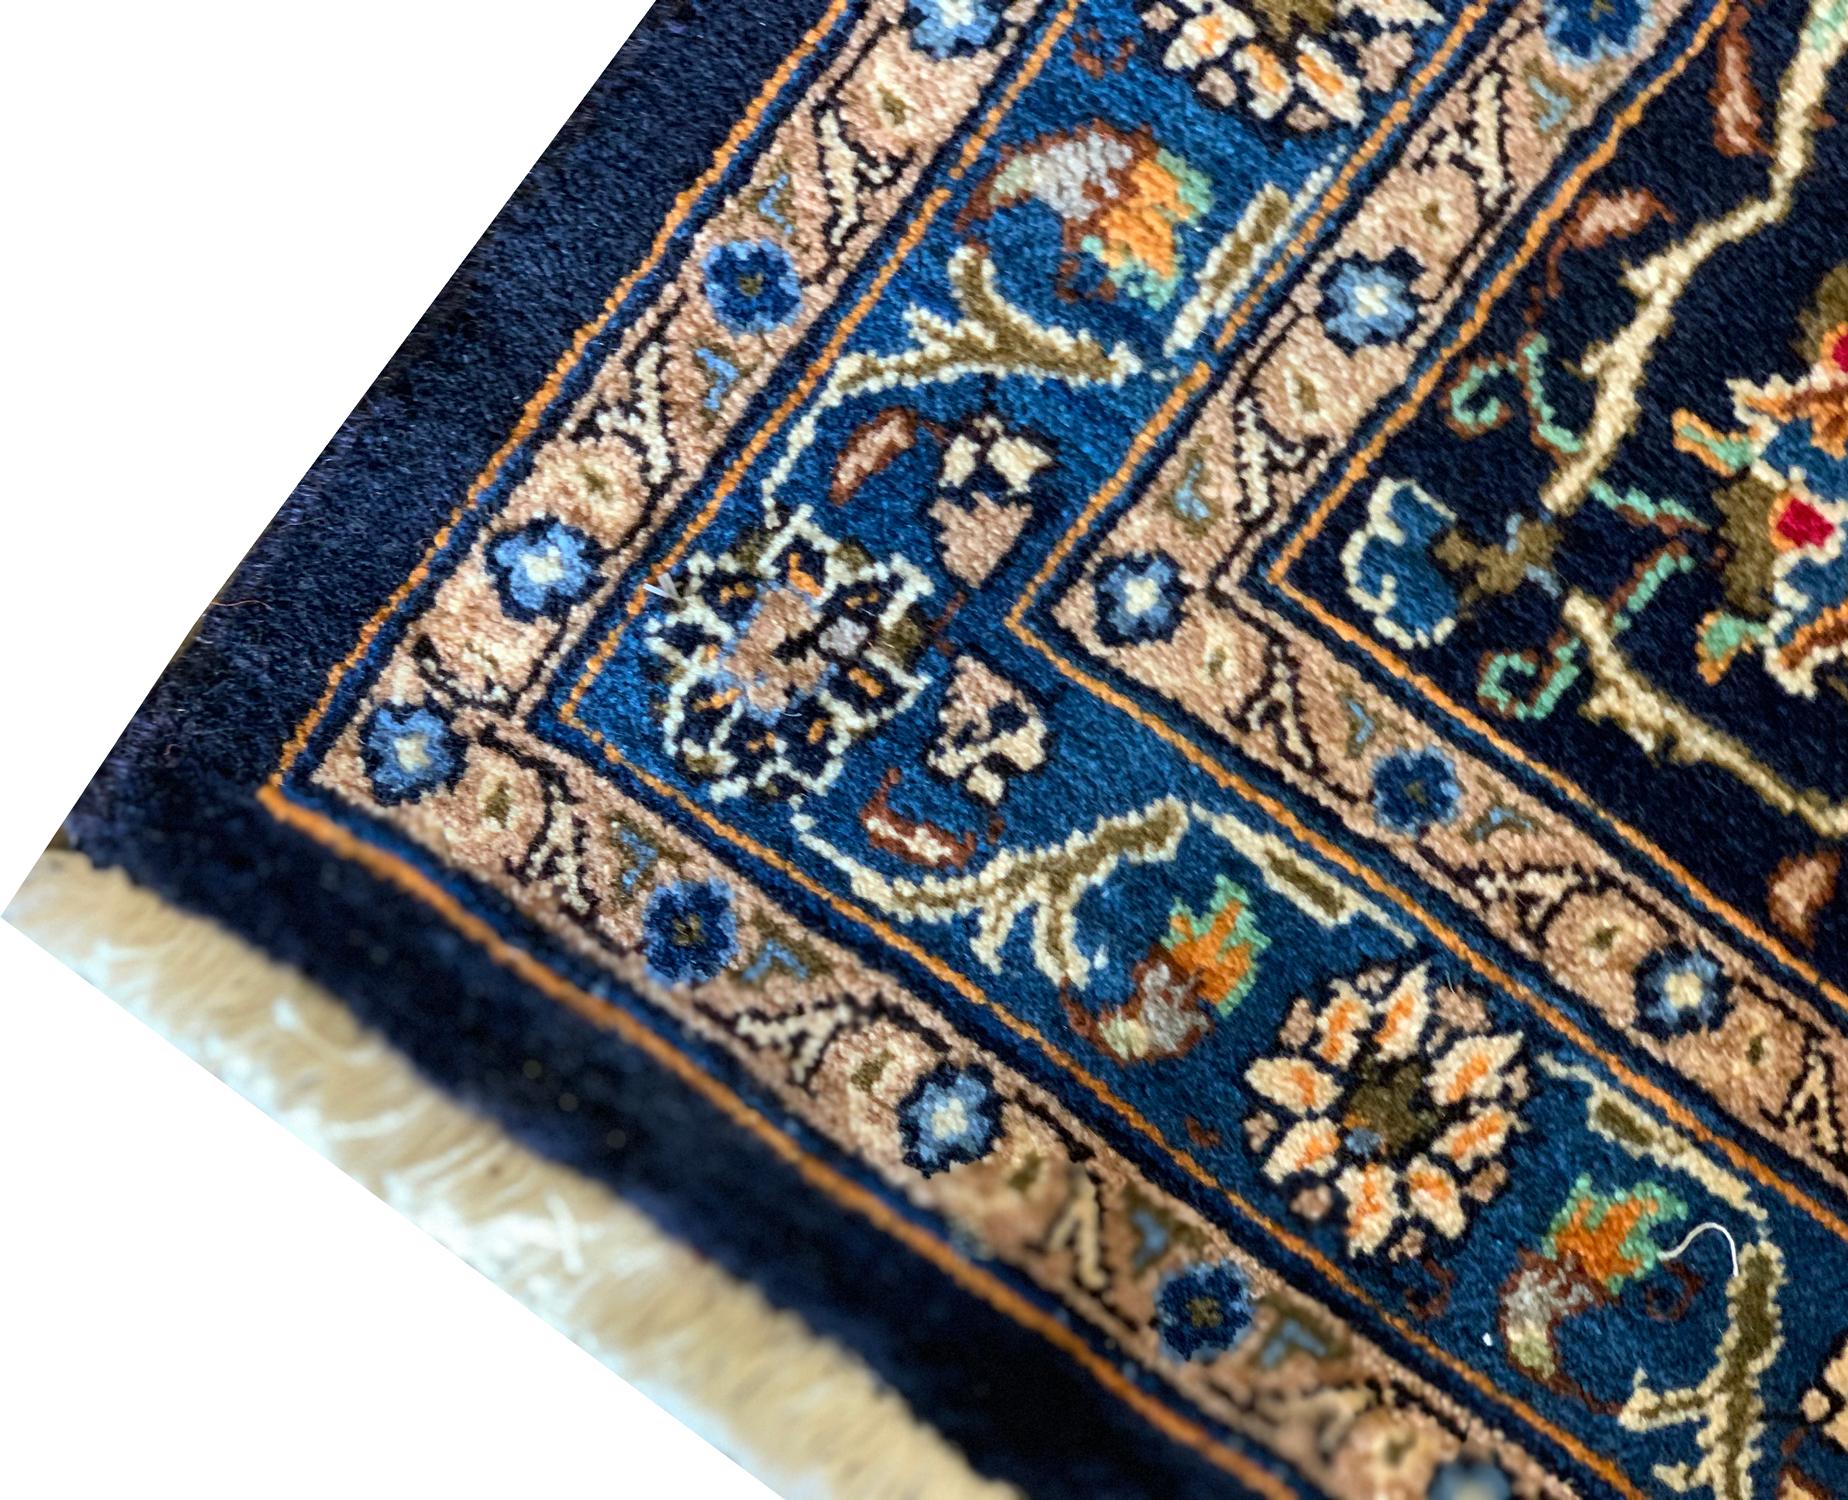 Hand-Woven Large Oriental5 Carpet Rug Vintage Wool Blue Beige Rug For Sale